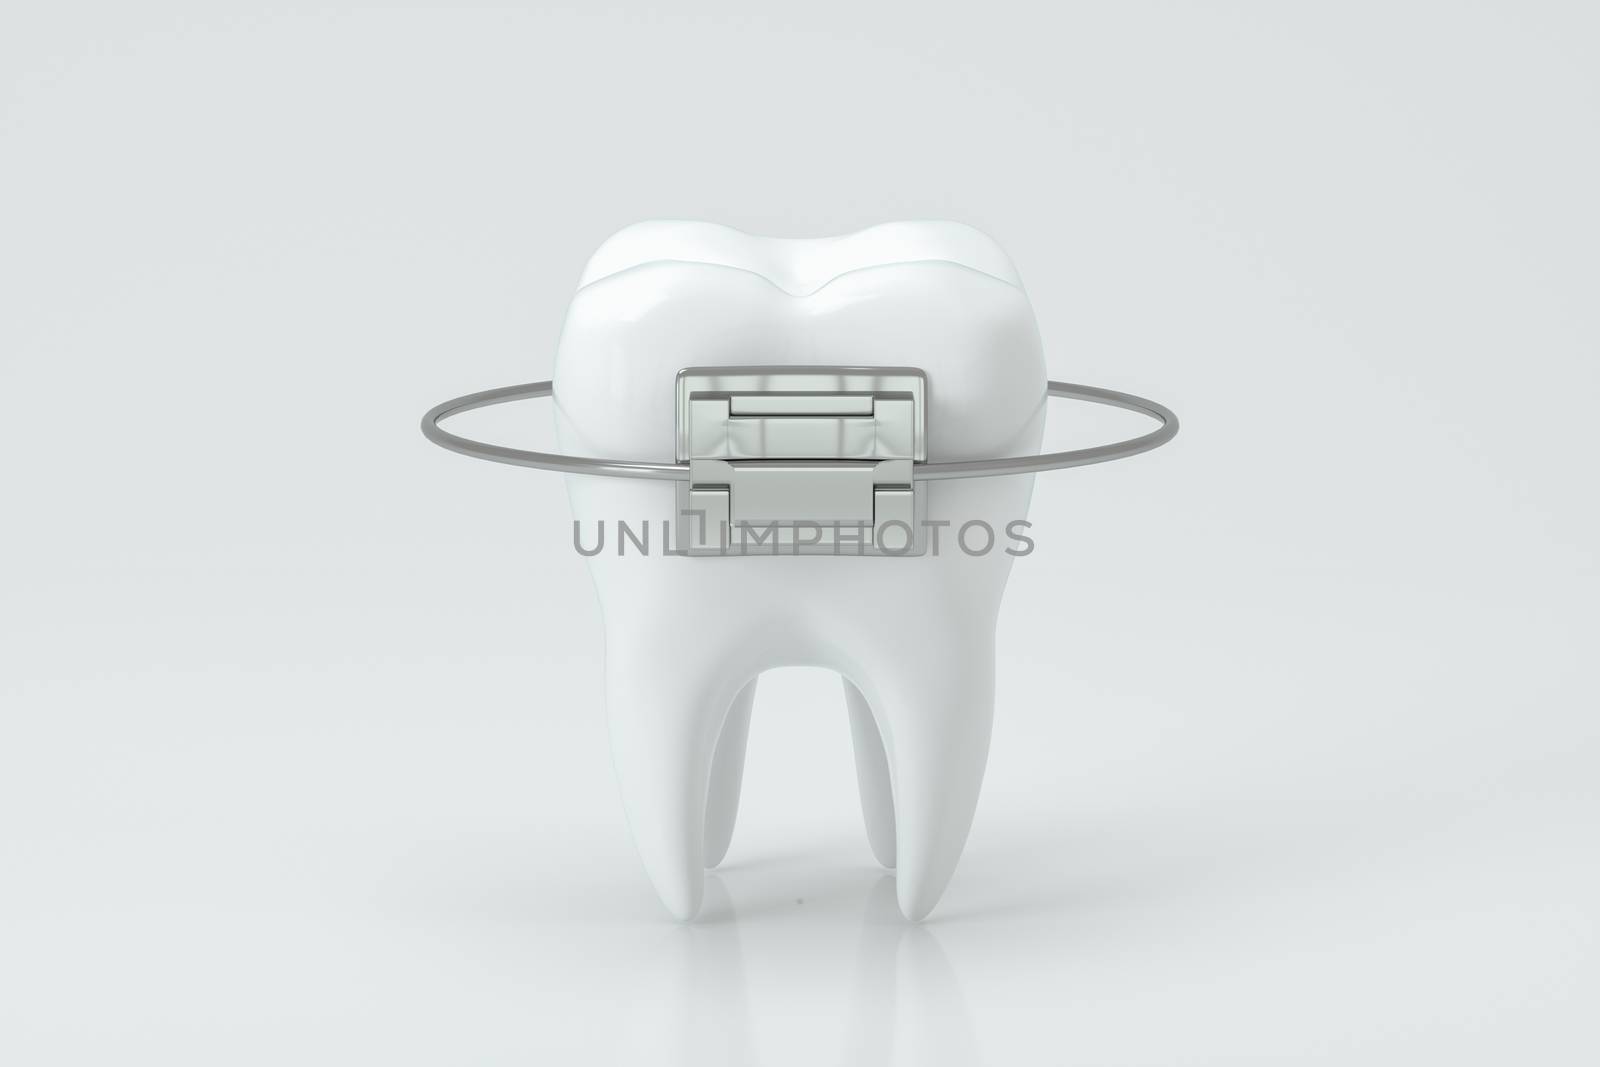 Dental braces and the teeth, 3d rendering. by vinkfan